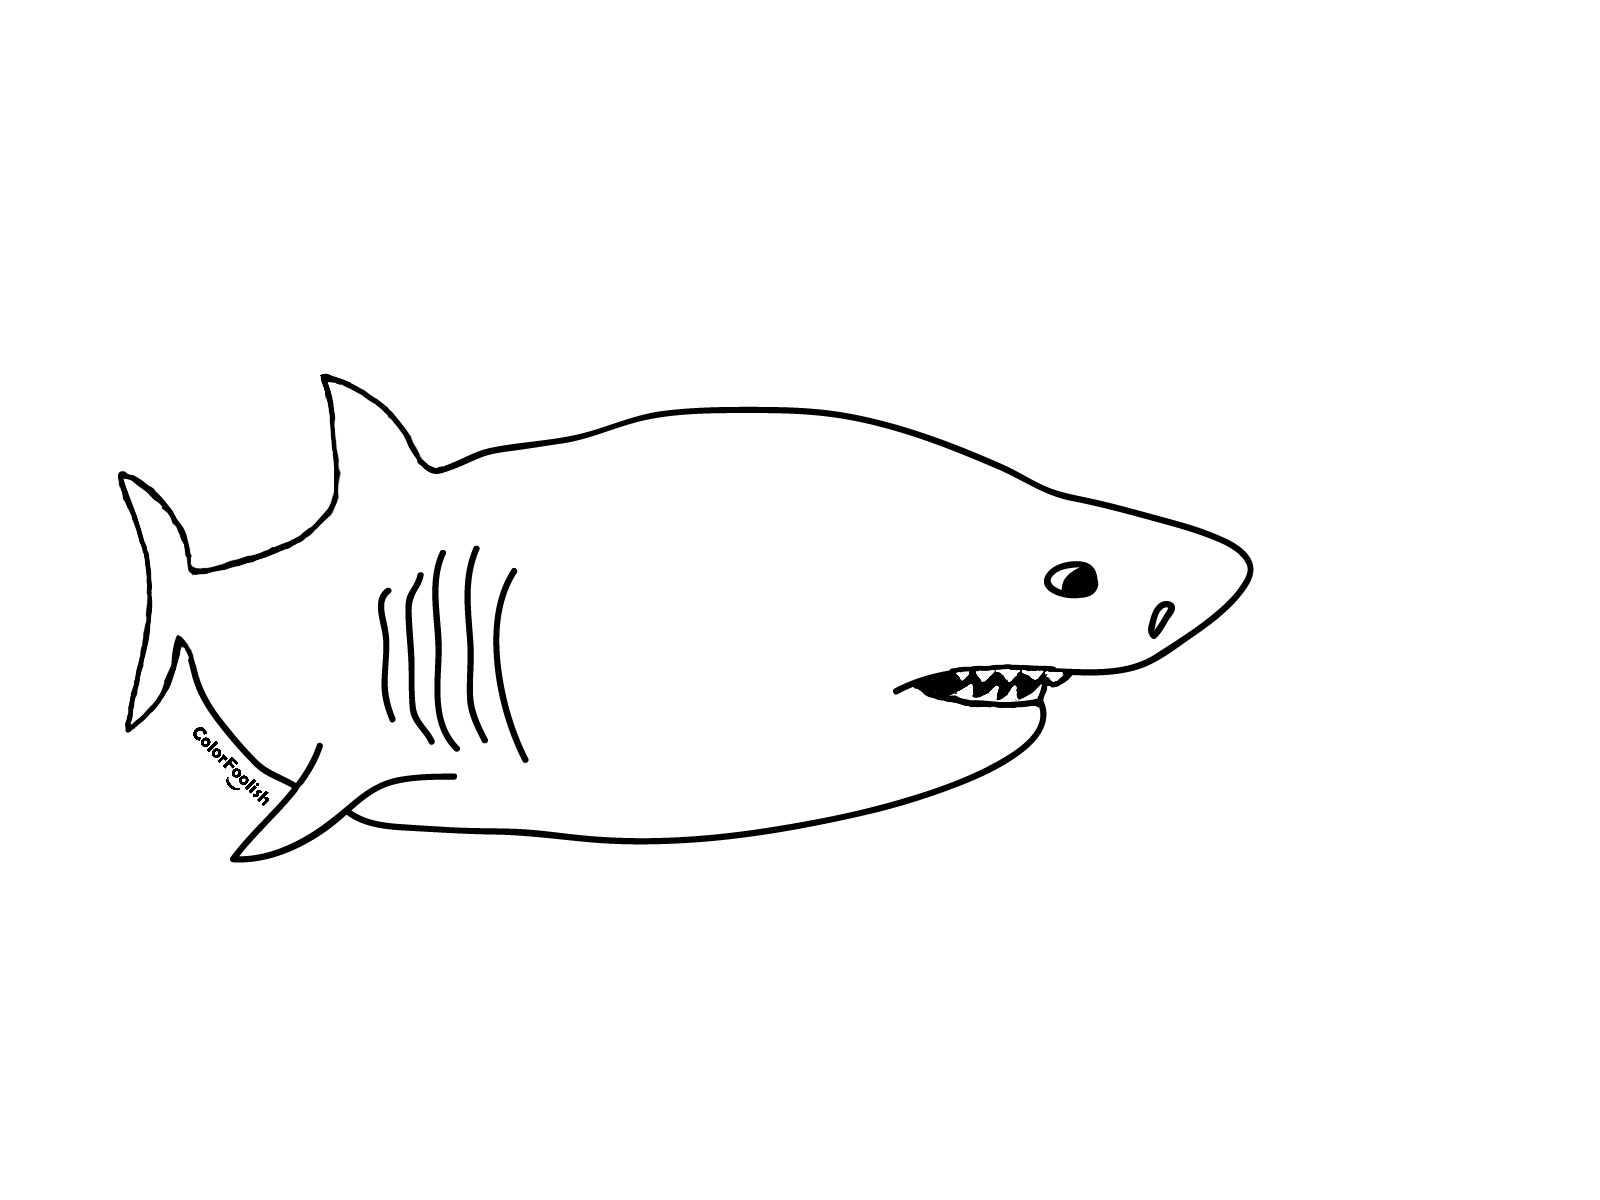 Halaman mewarnai hiu putih besar